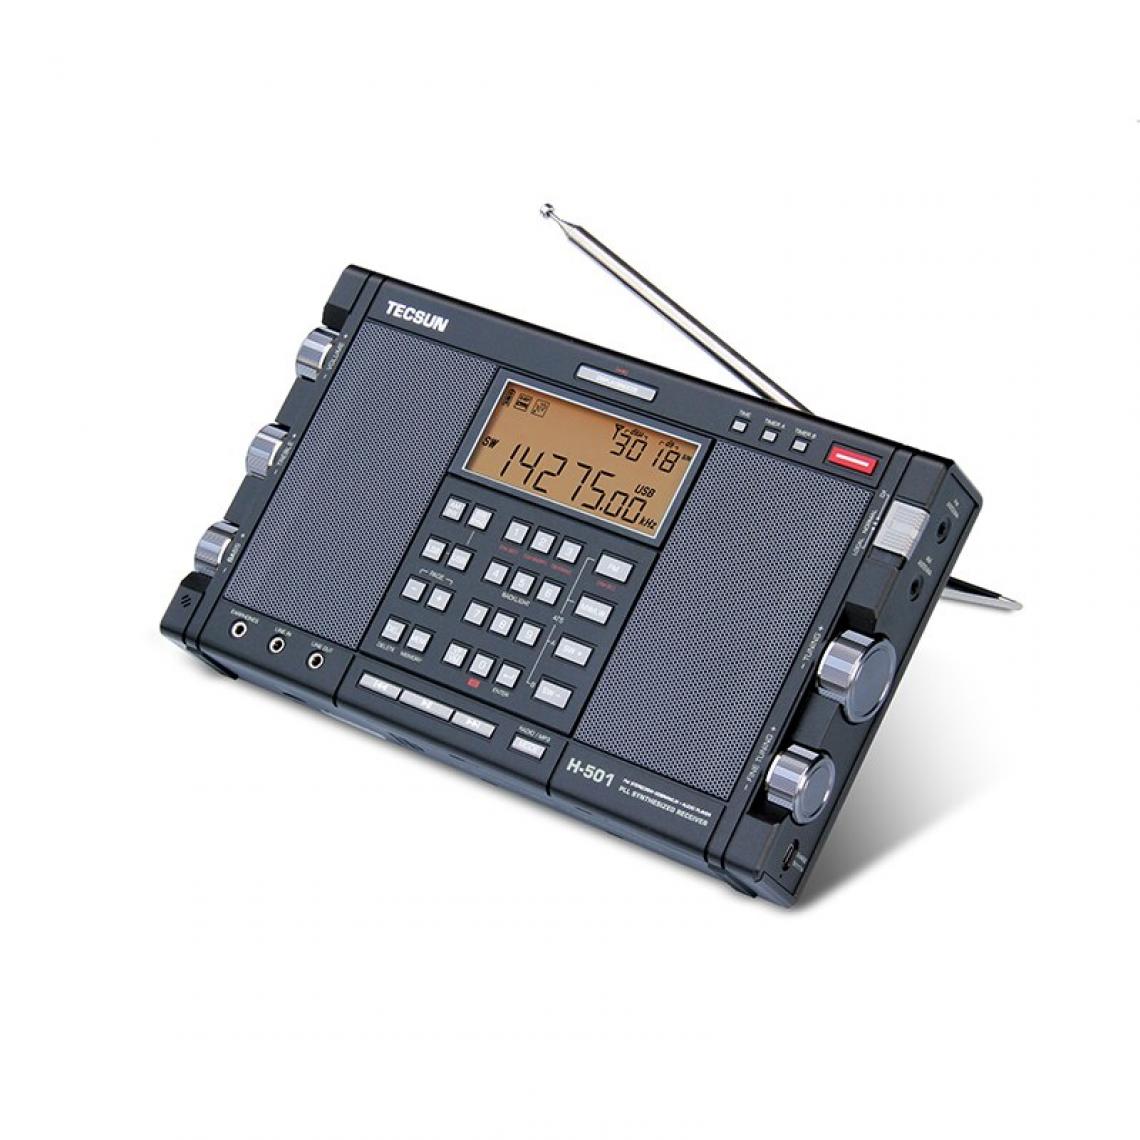 Universal - Radio stéréo portable Bluetooth Desheng H 501 haute performance pleine bande double haut-parleur tuning numérique FM AM radio ondes courtes SSB(Le noir) - Radio